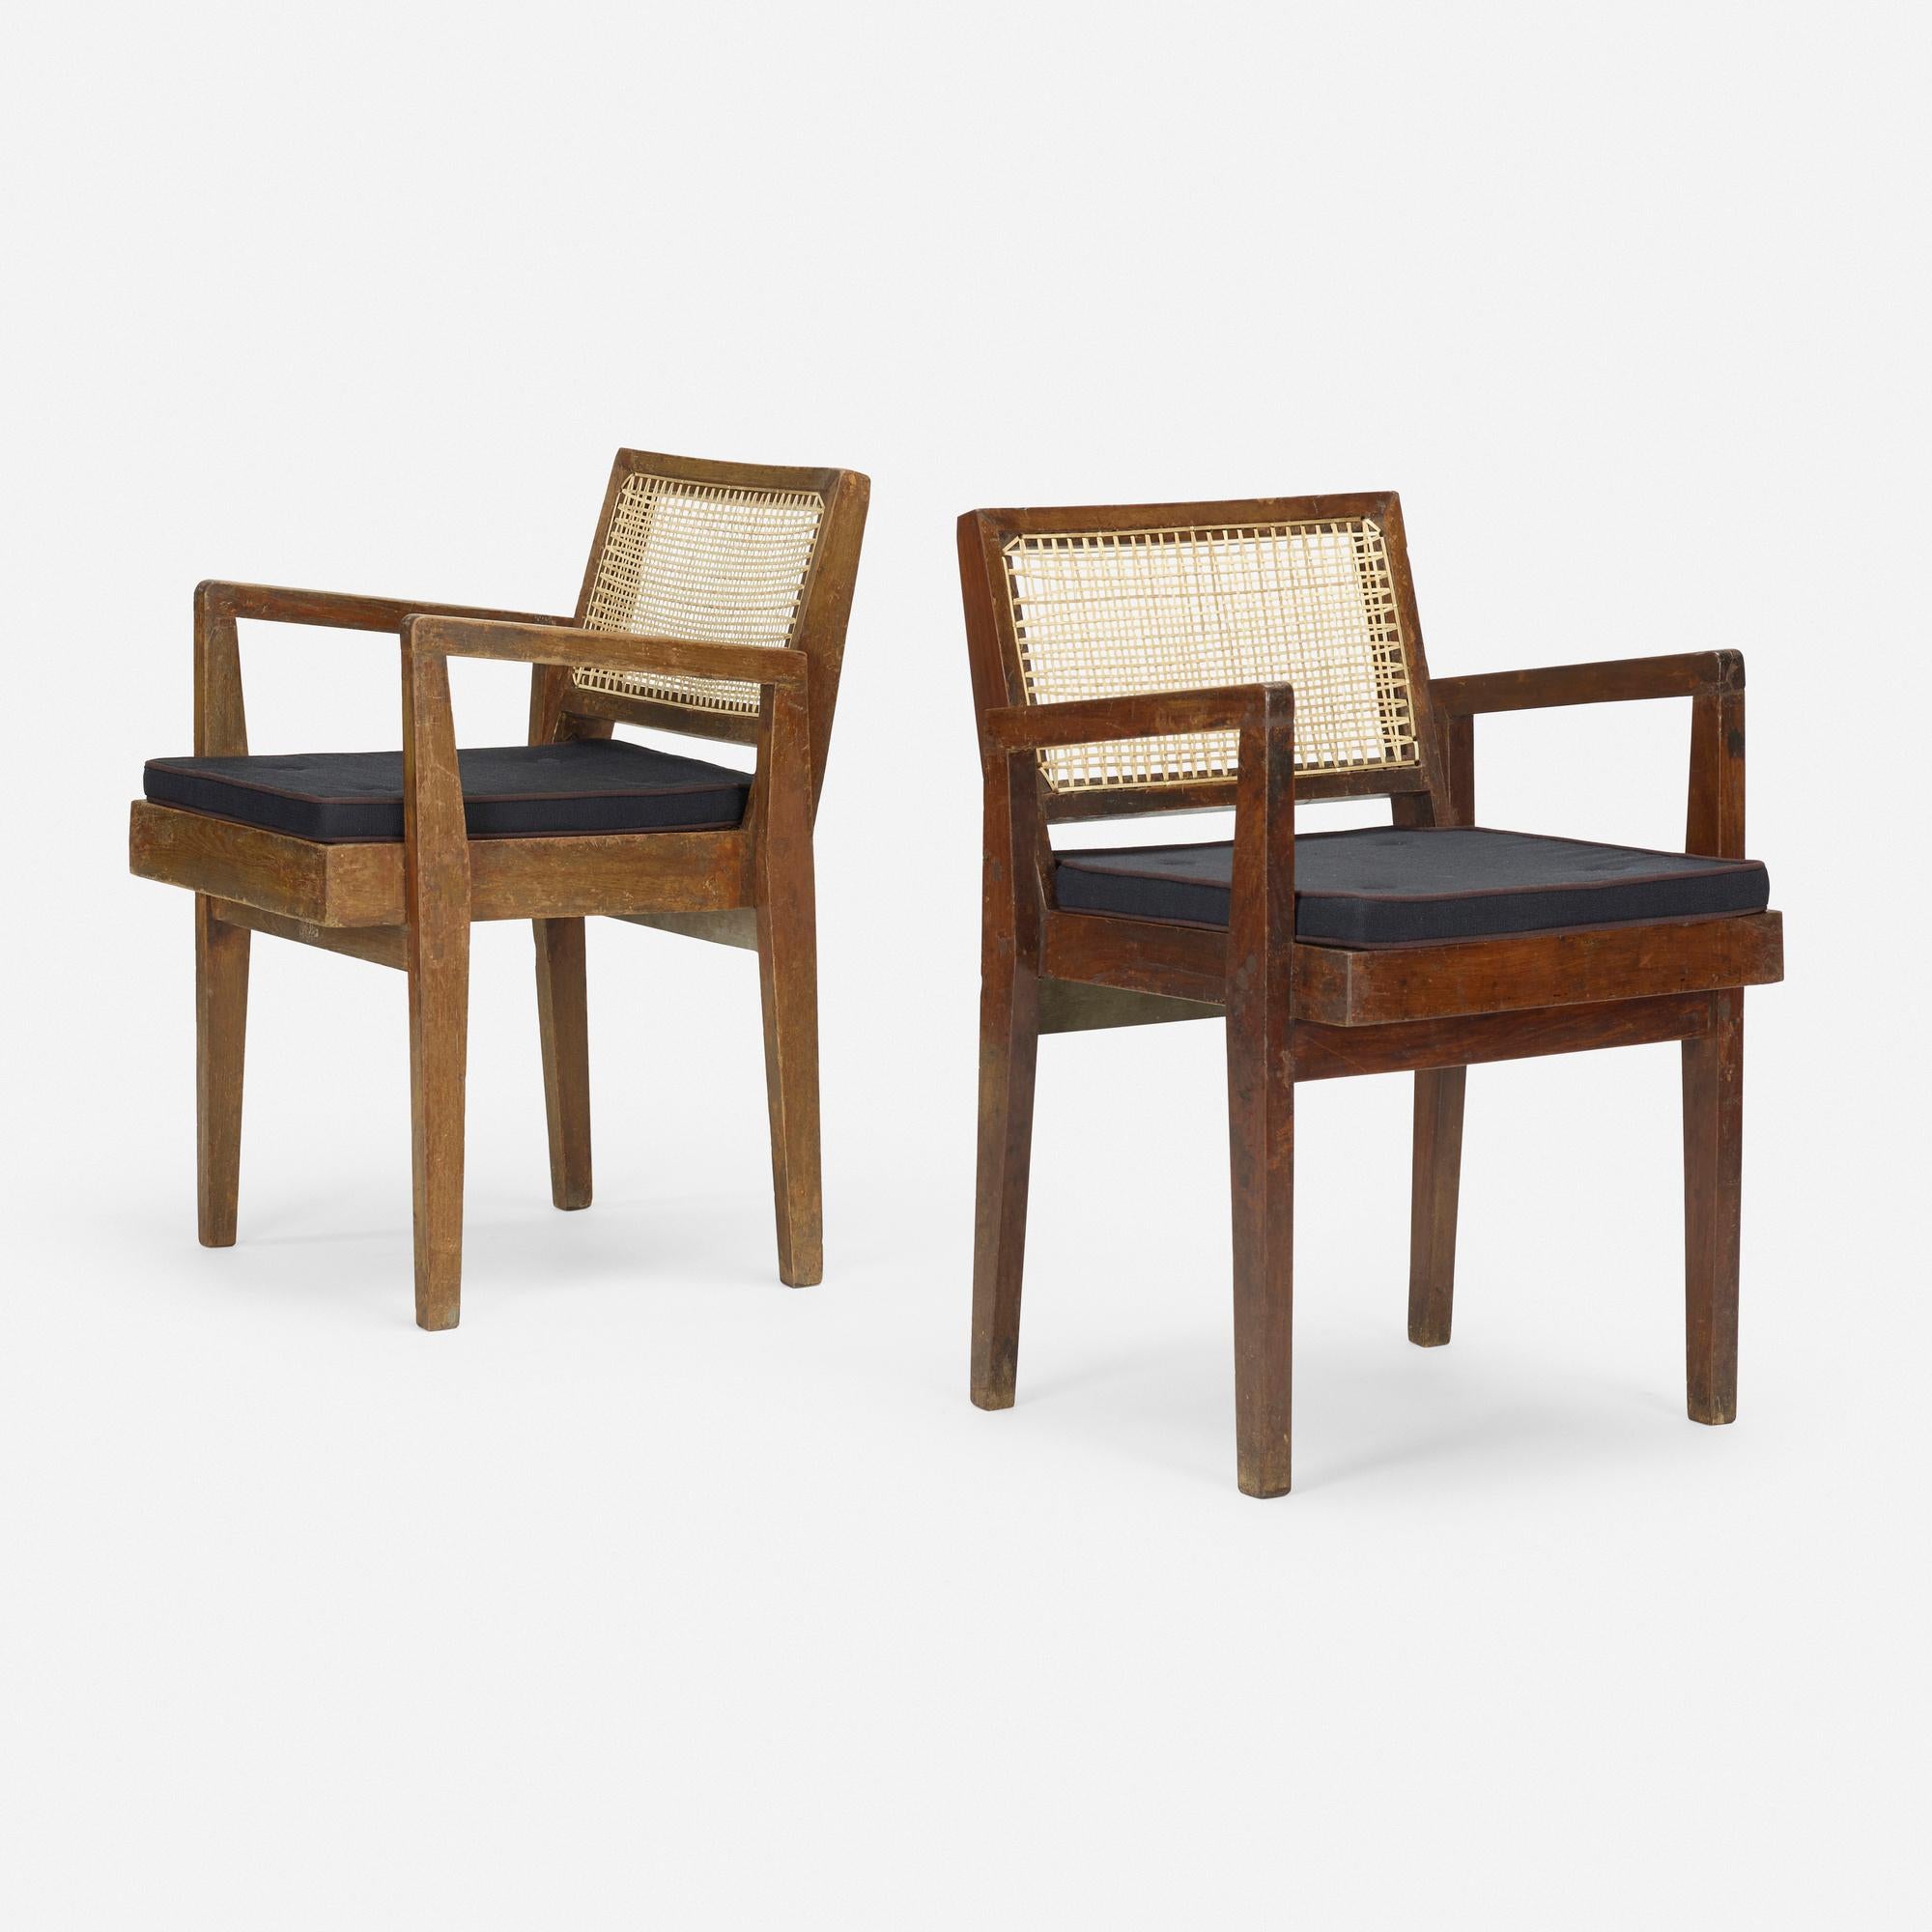 Ein Paar authentischer Sessel aus Chandigarh, entworfen von Pierre Jeanneret. Das Herstellungsdatum liegt zwischen 1955 und 1960. Diese Stühle sind aus massivem Burma-Teakholz gefertigt und haben Sitzflächen und Rückenlehnen aus Rohr.  Die hintere